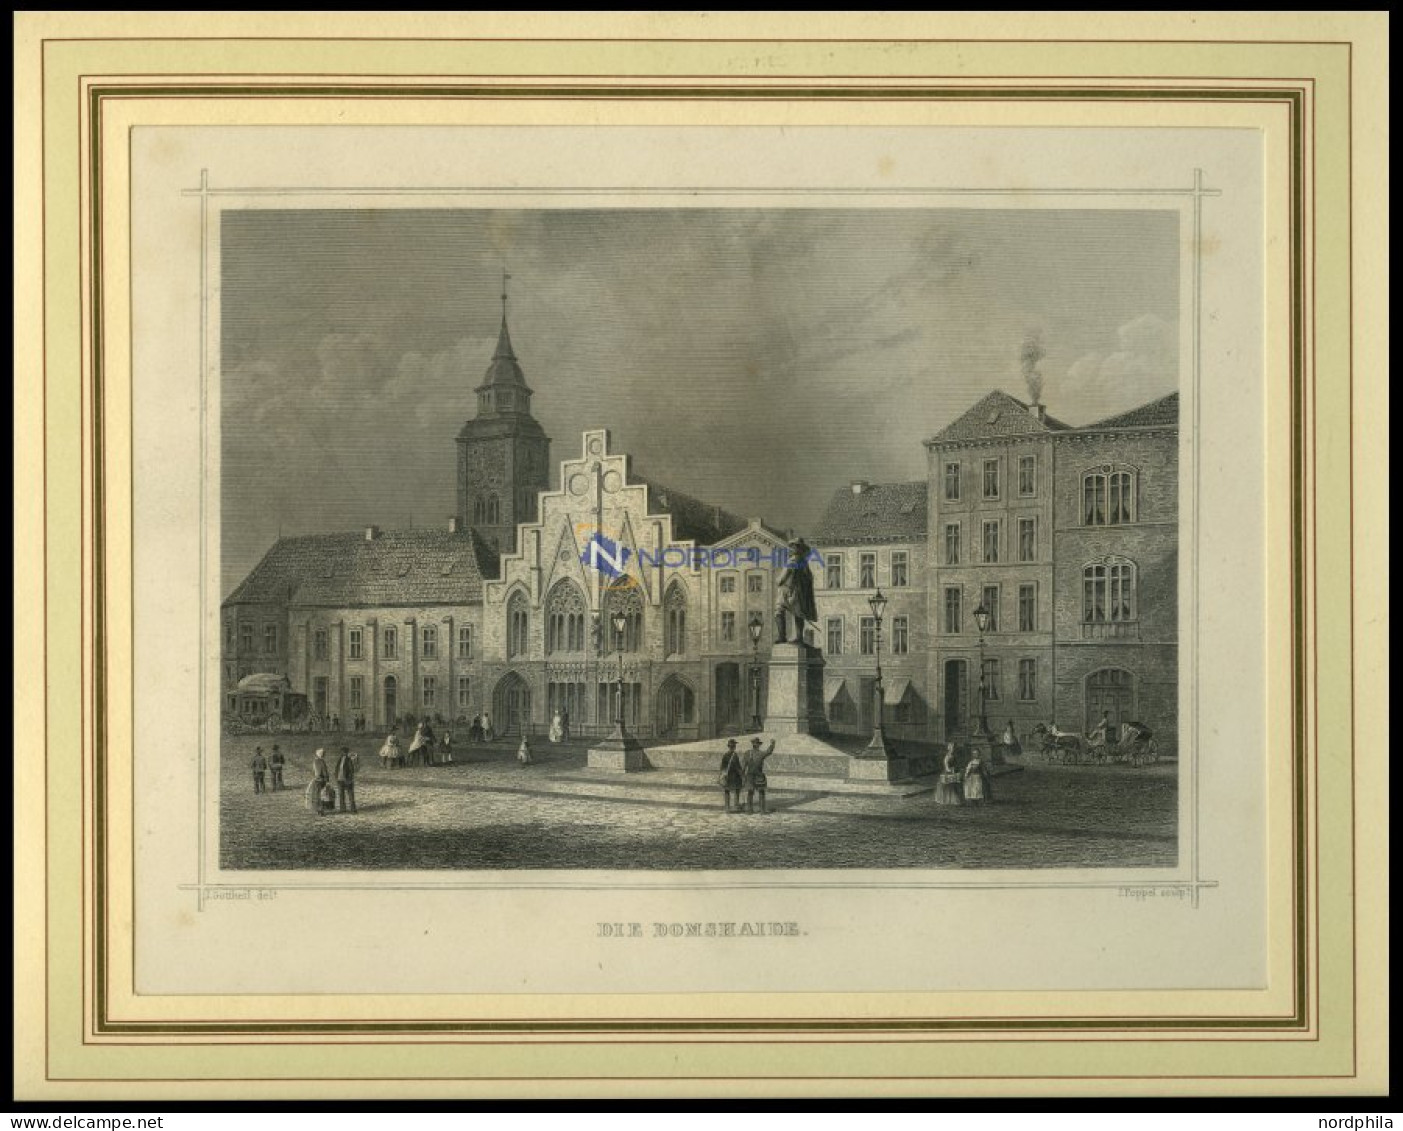 BREMEN: Die Domshaide, Stahlstich Von Gottheil/Poppel, 1840 - Stiche & Gravuren